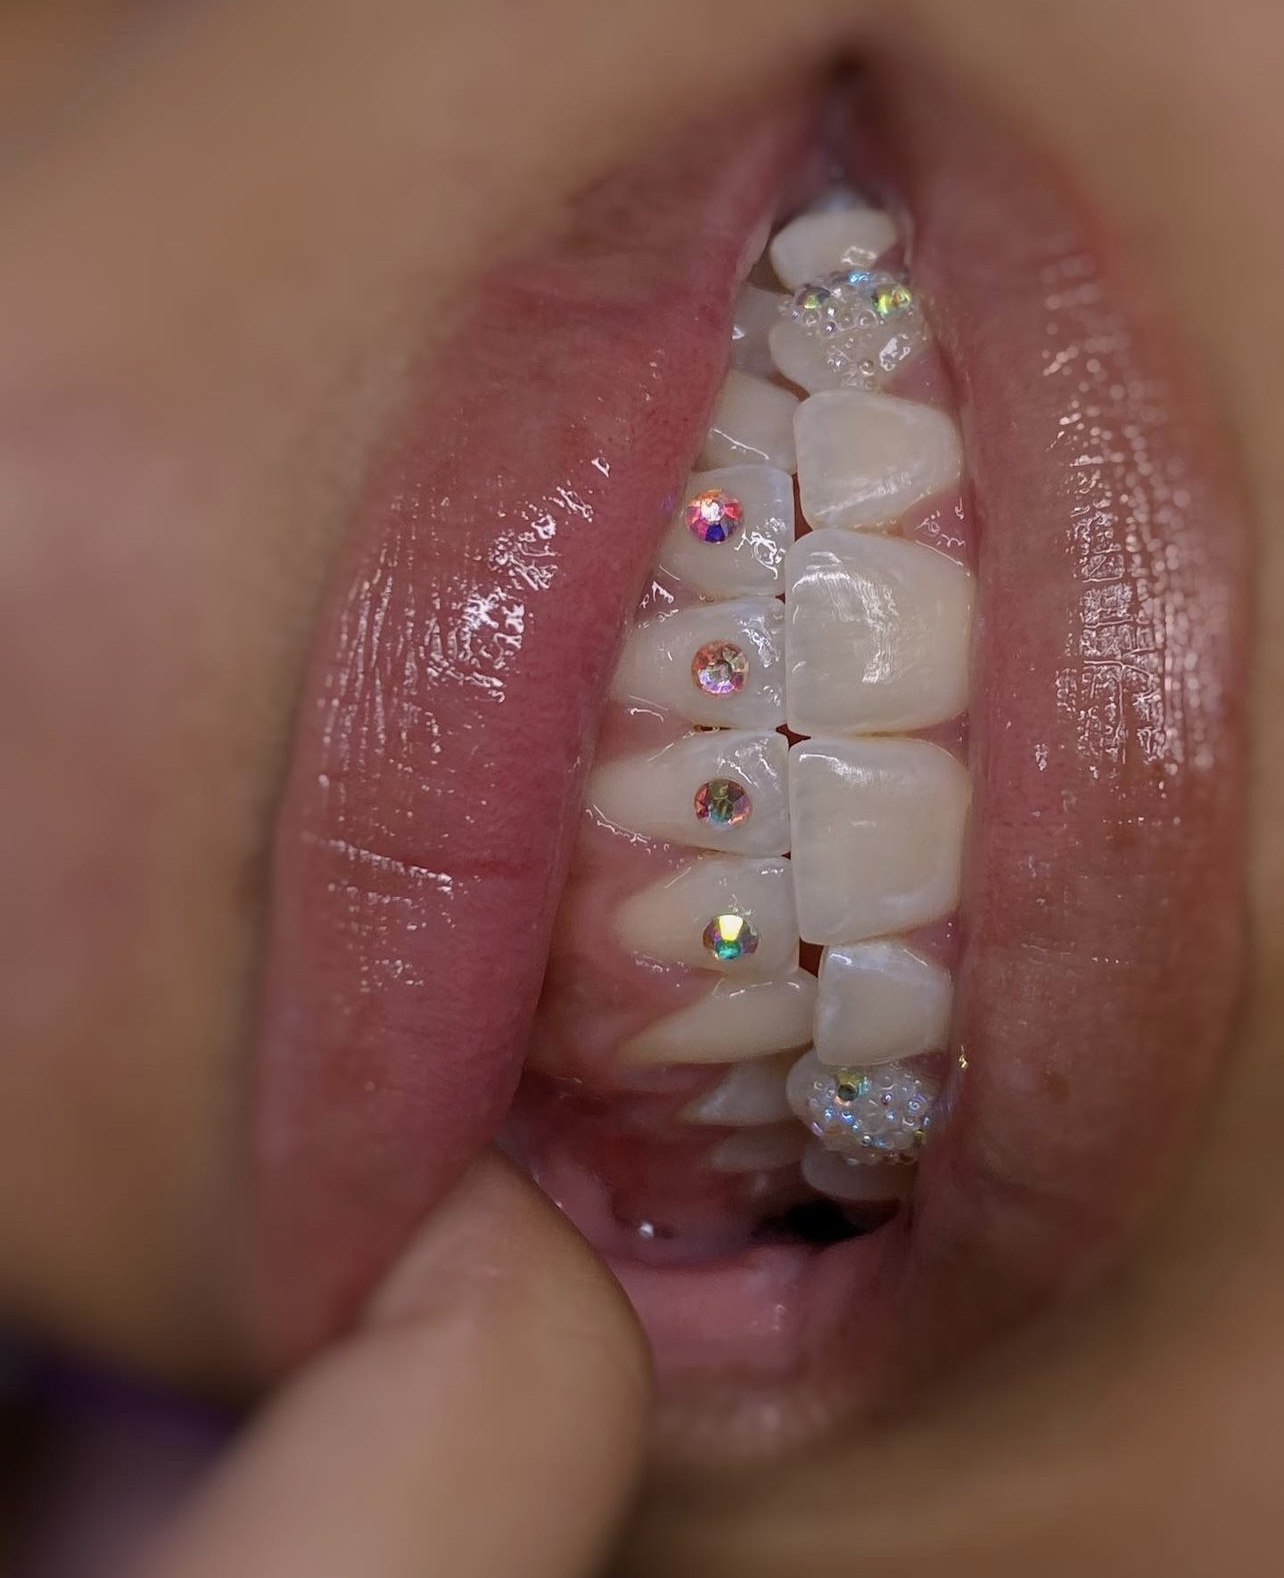 Tooth Gem Starter Kit – Lush Beauty & Aesthetics